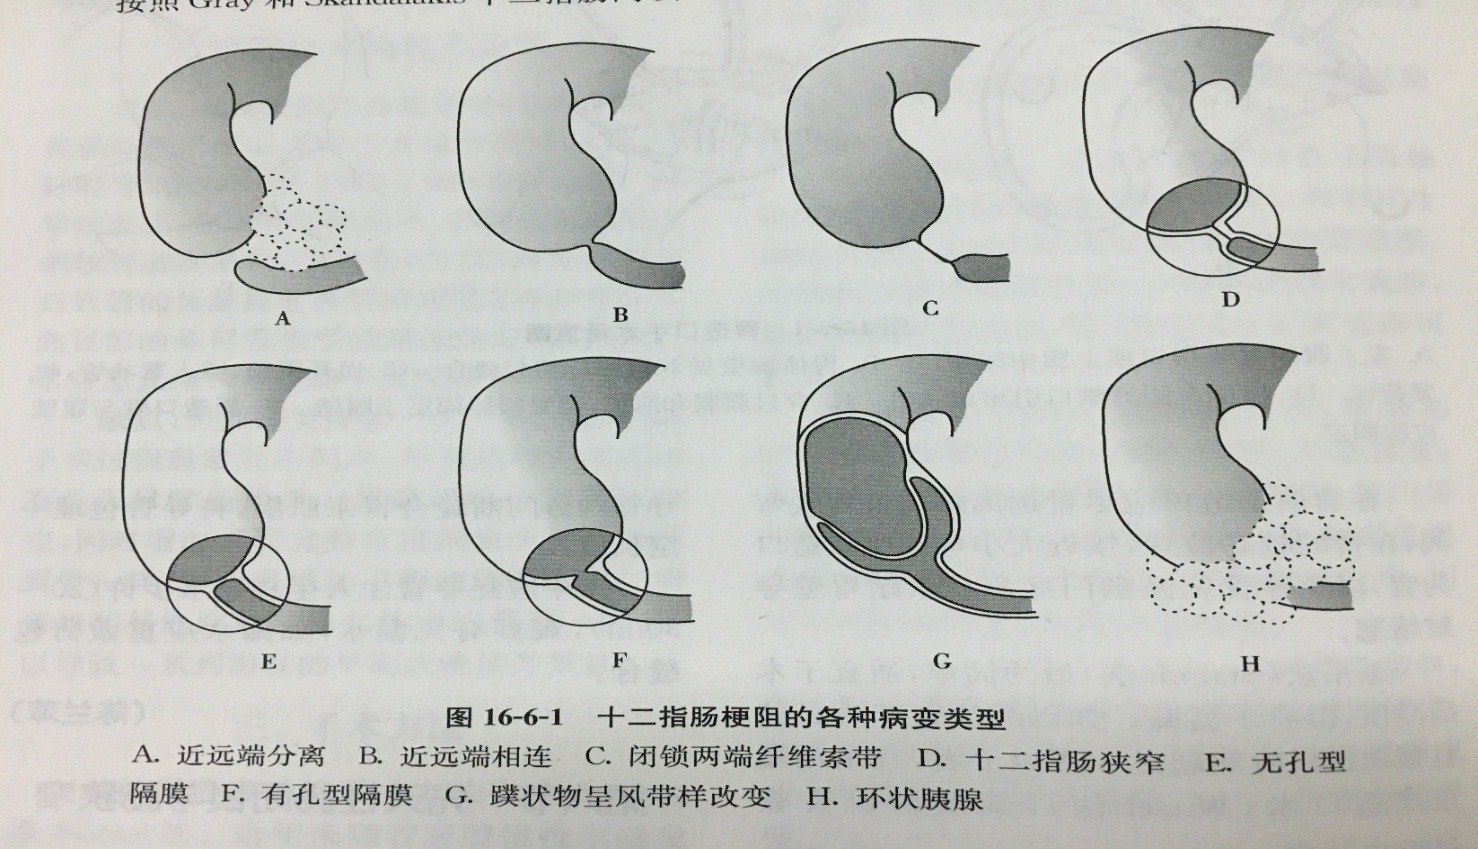 环状胰腺图片